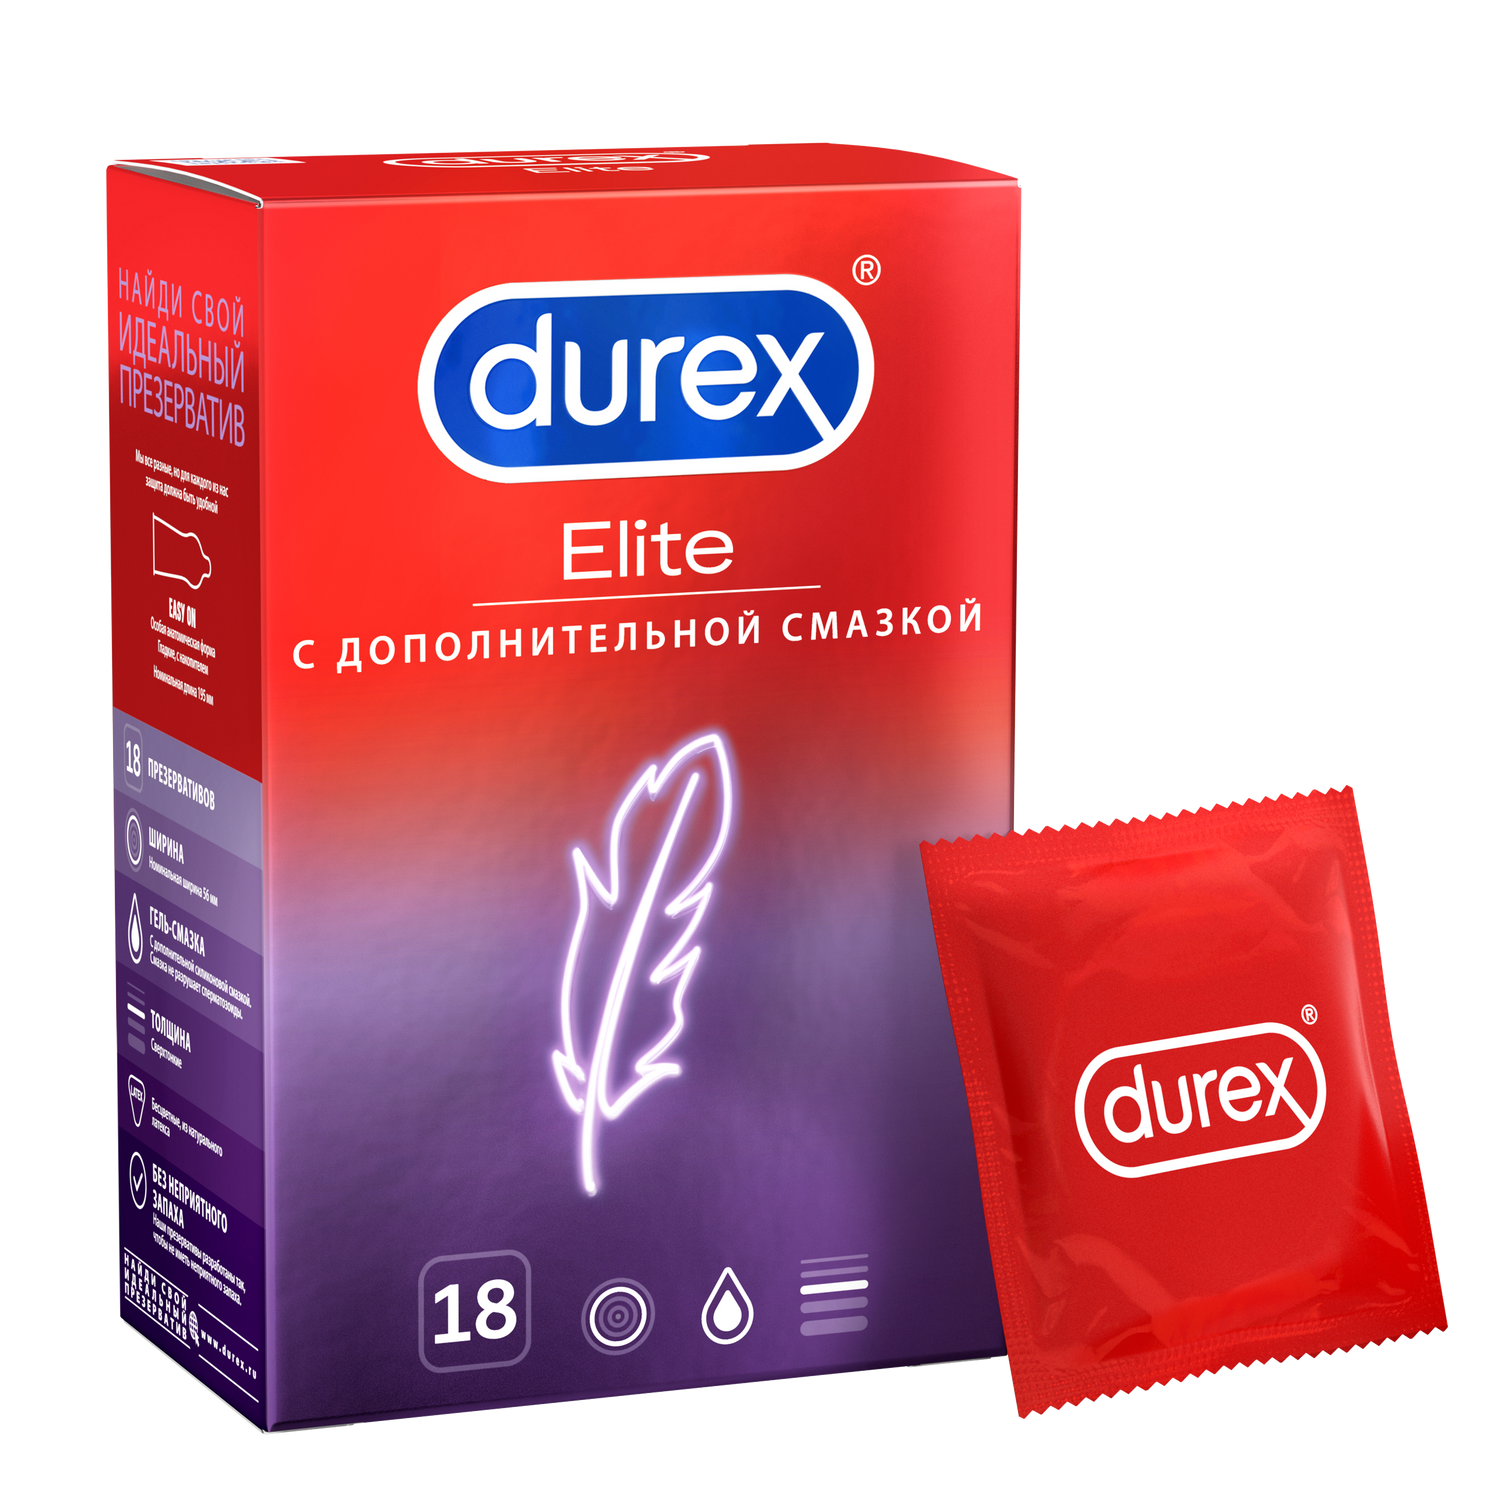 Презервативы Durex Elite сверхтонкие, 18 шт. презервативы r and j ультрамягкие дополнительная смазка 3 шт уп 6 упаковок